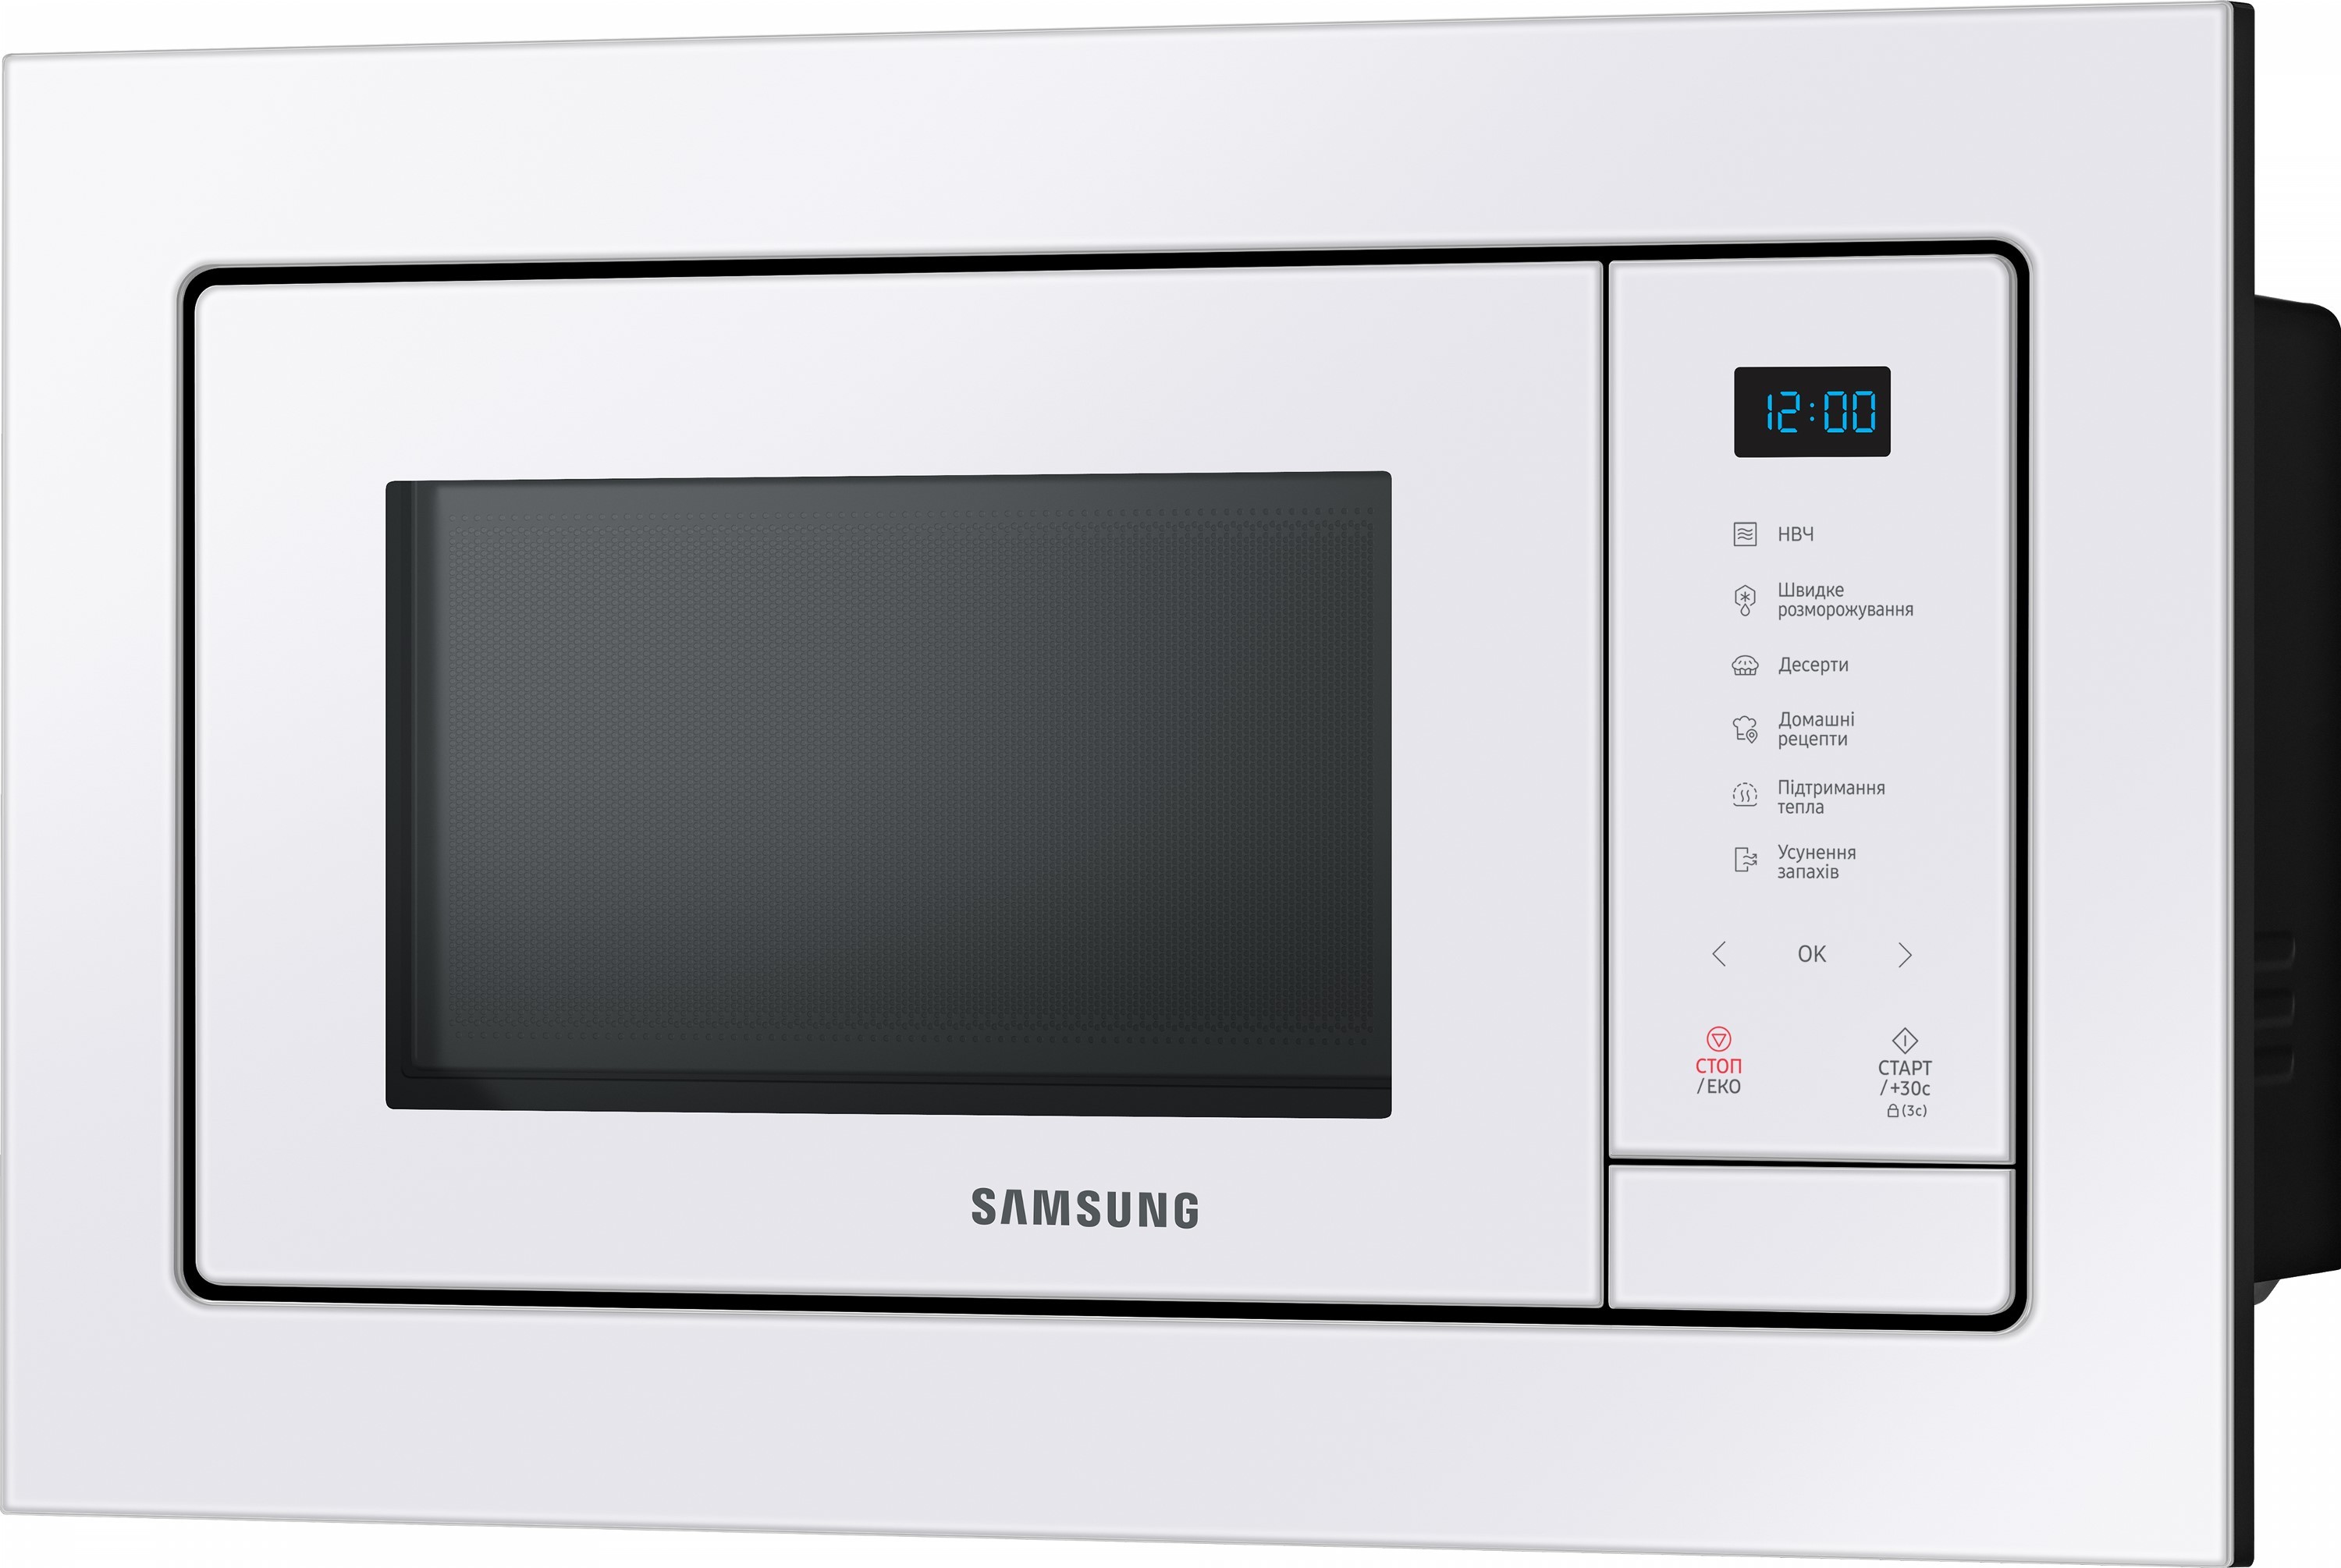 Микроволновая печь Samsung MS23A7118AW/UA цена 8599.00 грн - фотография 2